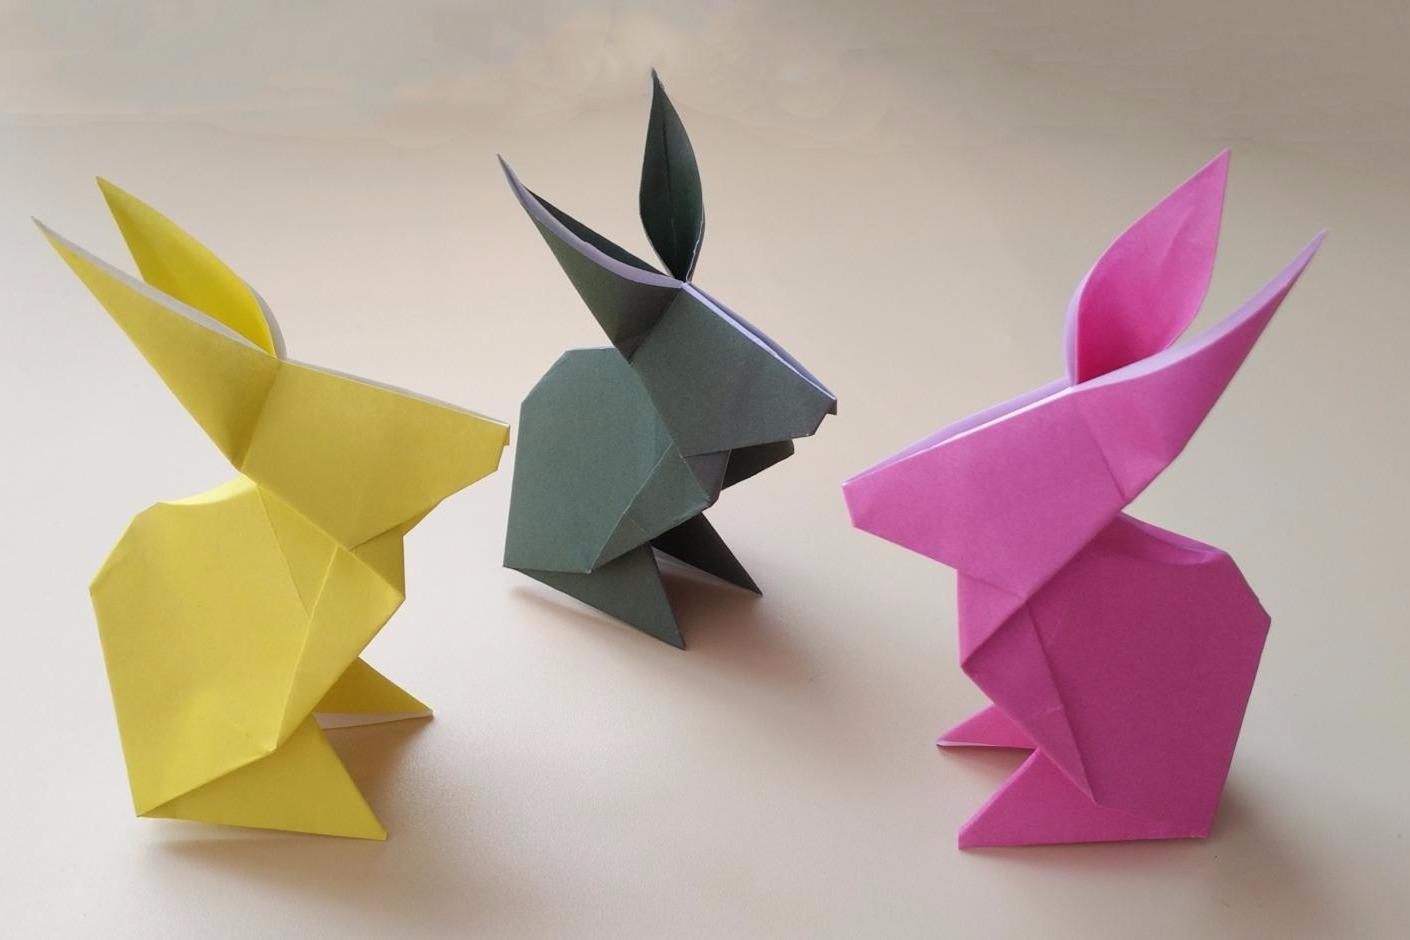 2分钟学会折纸 立体小 兔子,简单几步就折好了,手工折纸视频